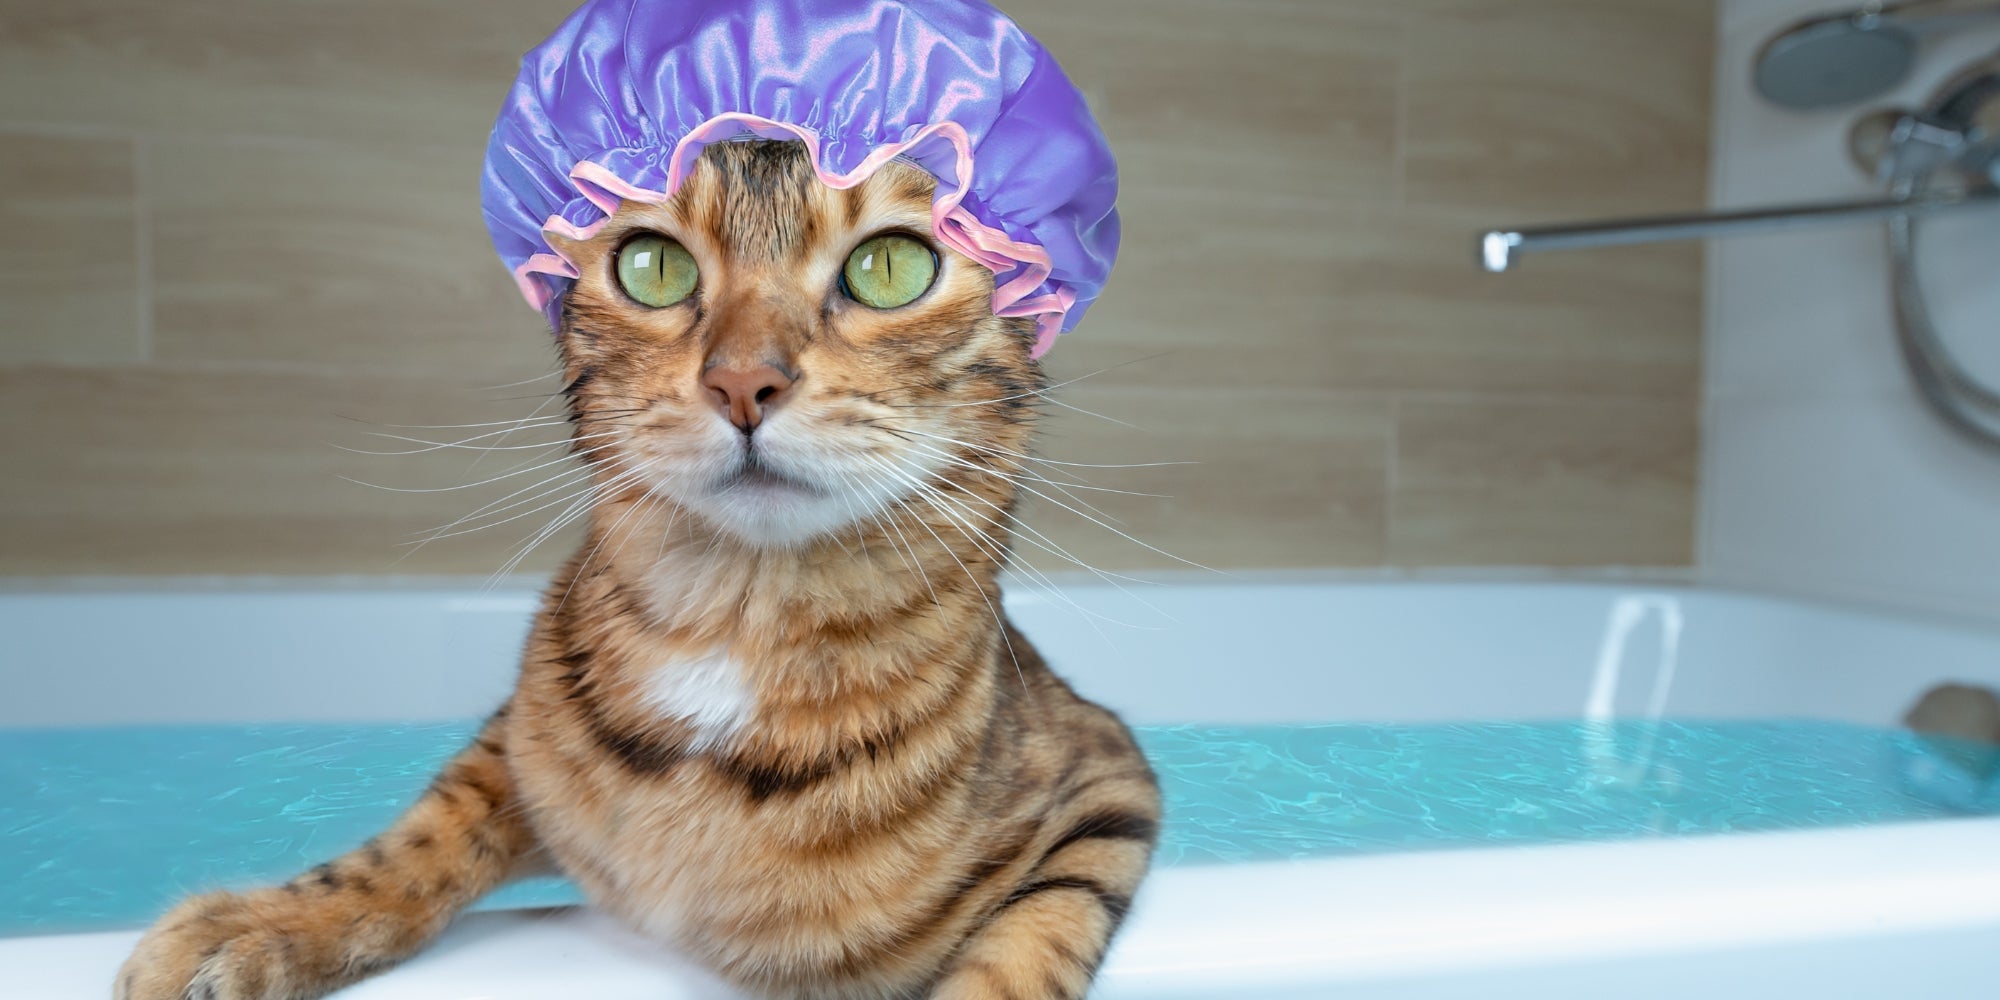 Divertido gato doméstico con gorro sentado en una bañera